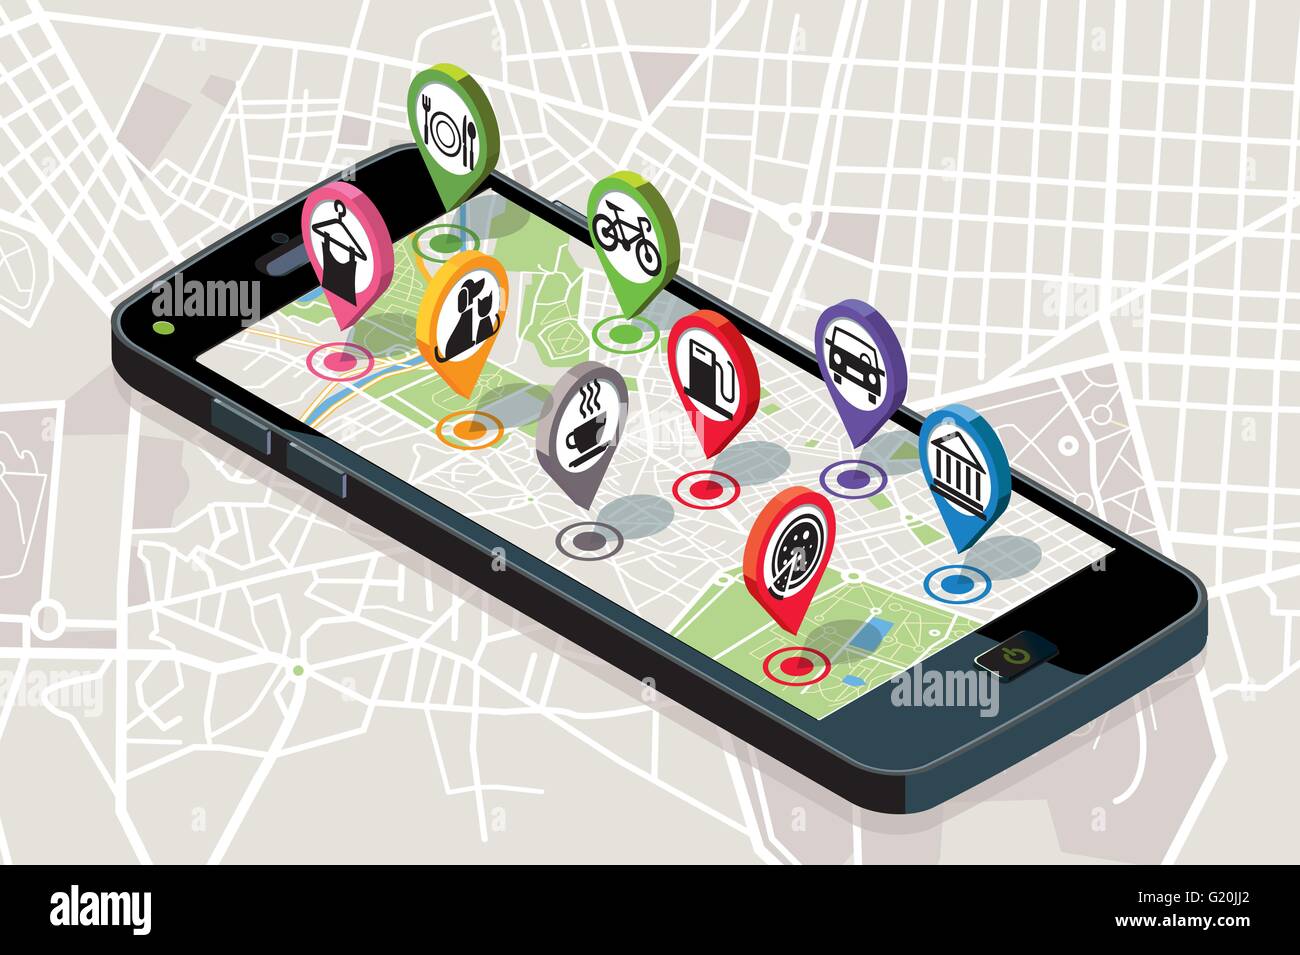 Mappa della città con i servizi GPS icone. Smartphone. Su di esso schermo una mappa vettoriale della città, dove appaiono i perni con la posizione. Illustrazione Vettoriale